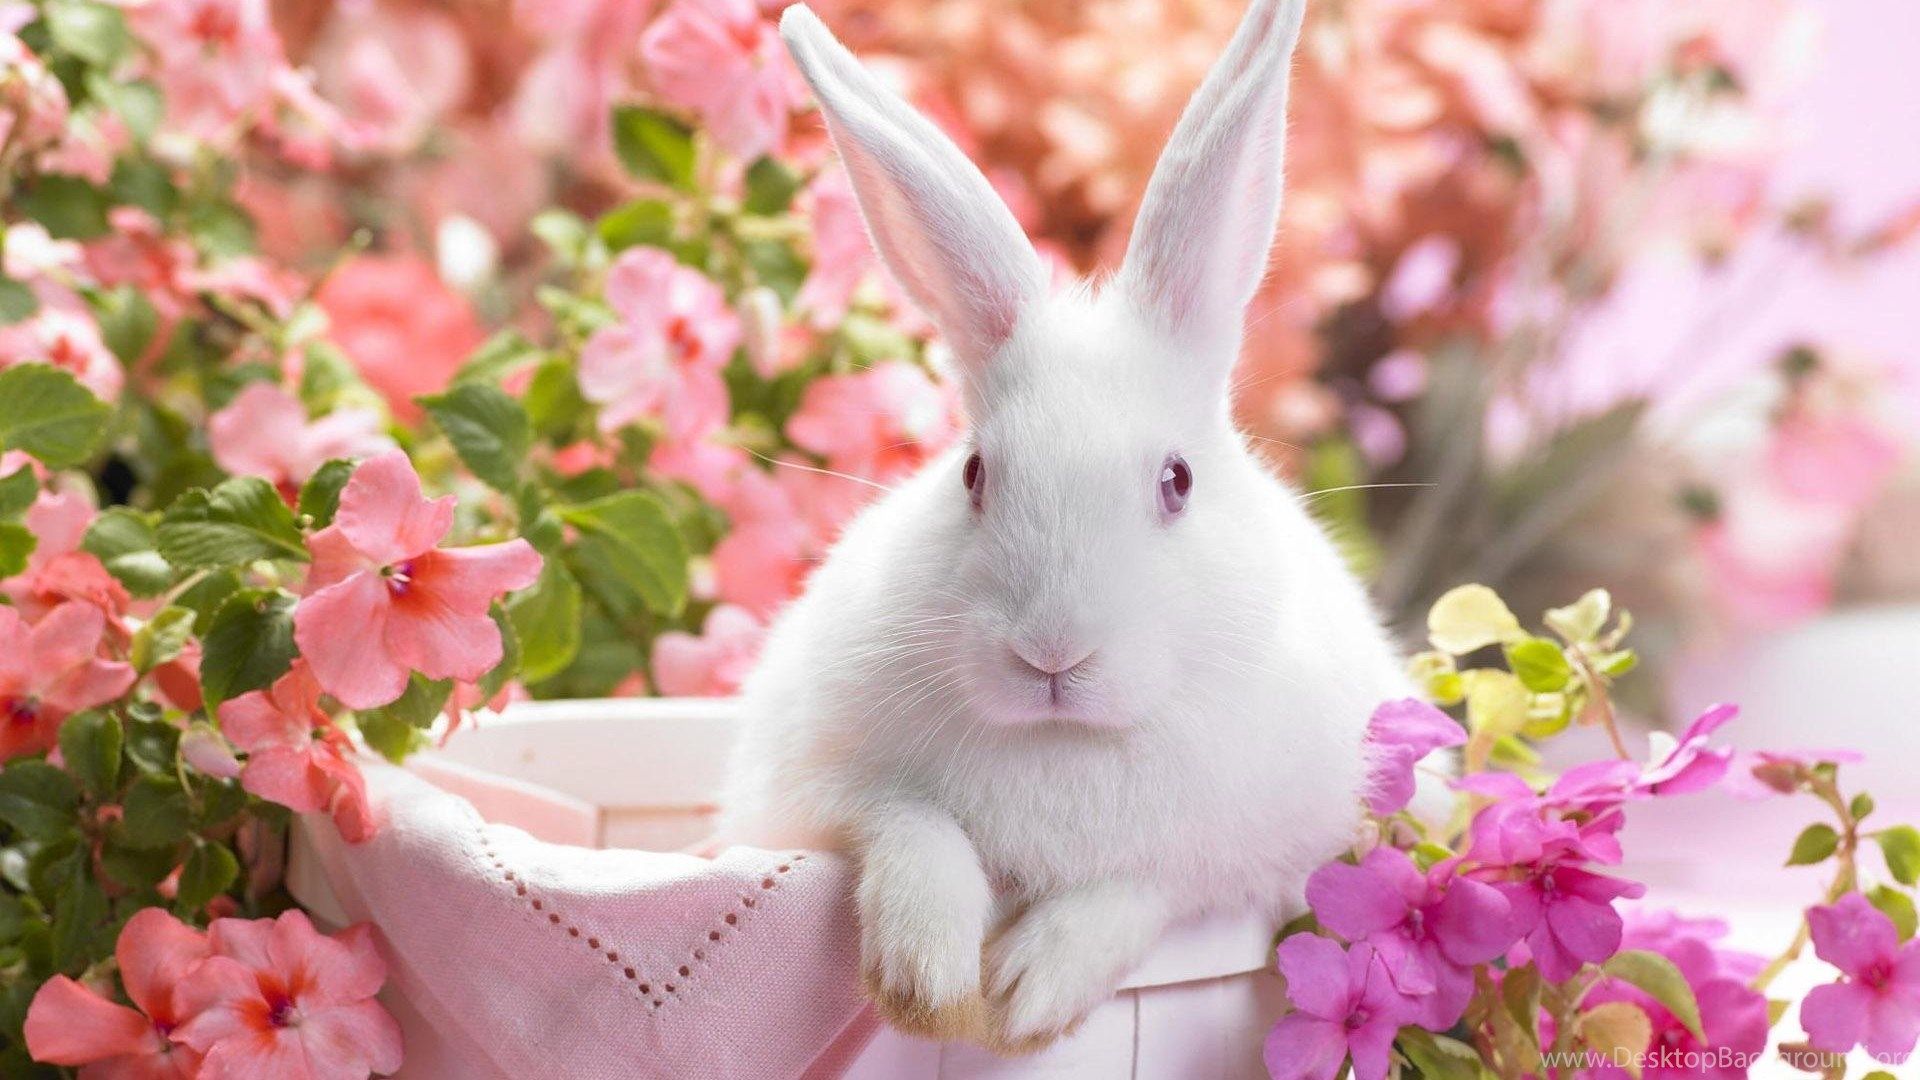 Magazine Wallpaper: Bunny Rabbits Wallpaper Easter Cute Pets